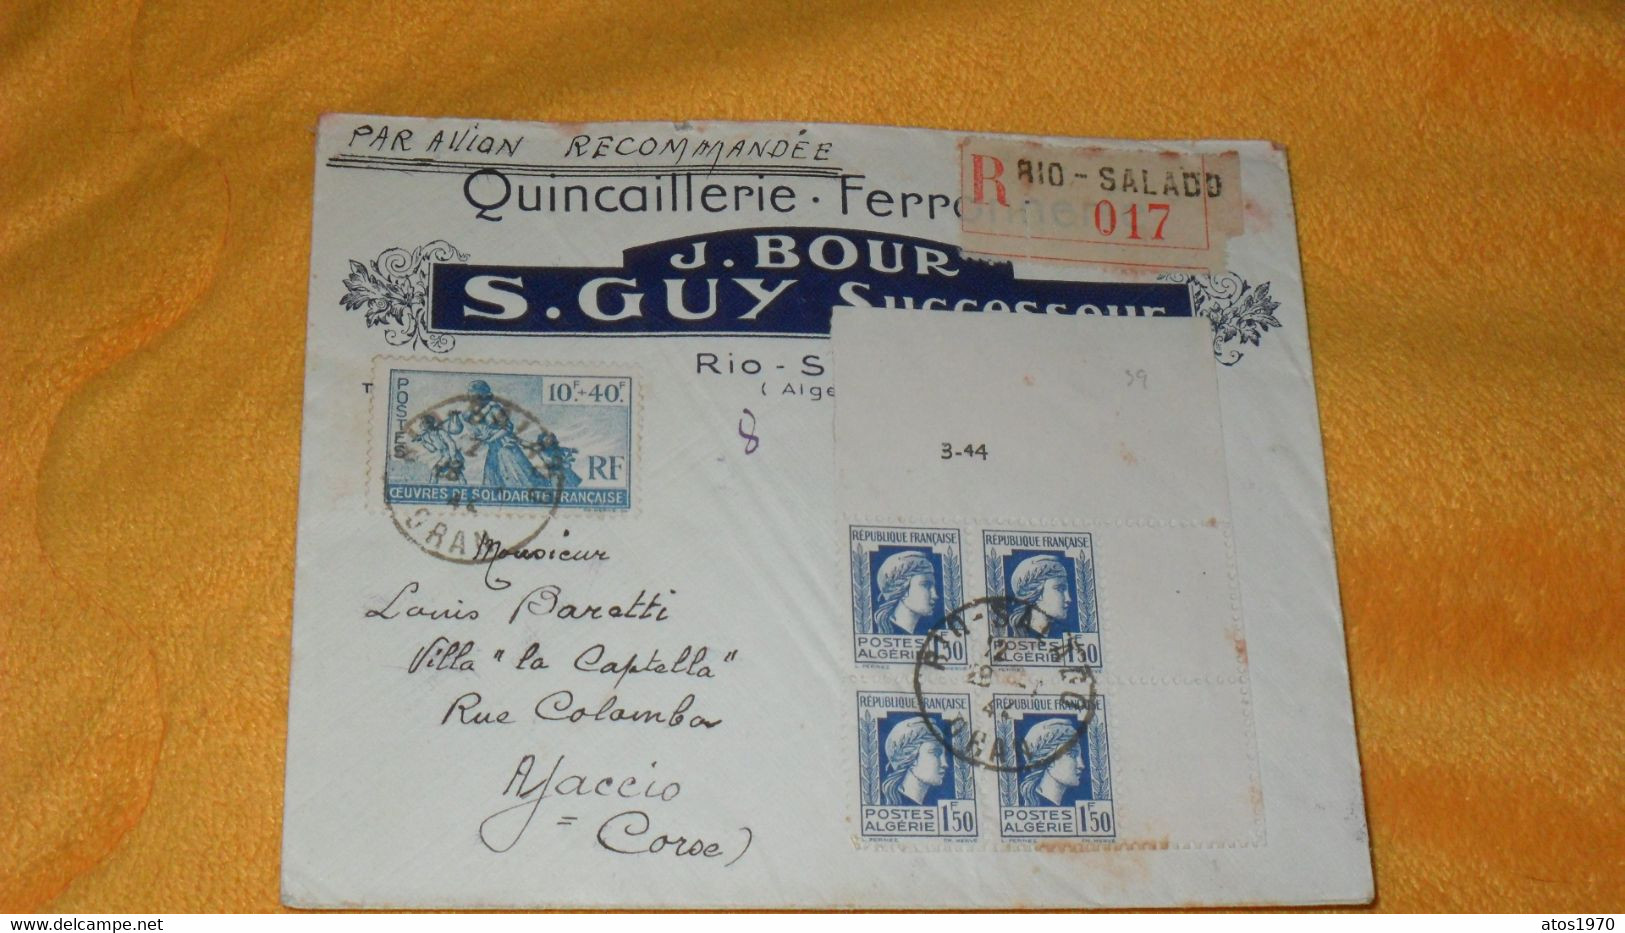 ENVELOPPE ANCIENNE DE 1944.../ J. BOUR S. GUY QUINCAILLERIE RIO SALADO..R 017 POUR AJACCIO CORSE + CACHETS + TIMBRES X5 - Lettres & Documents